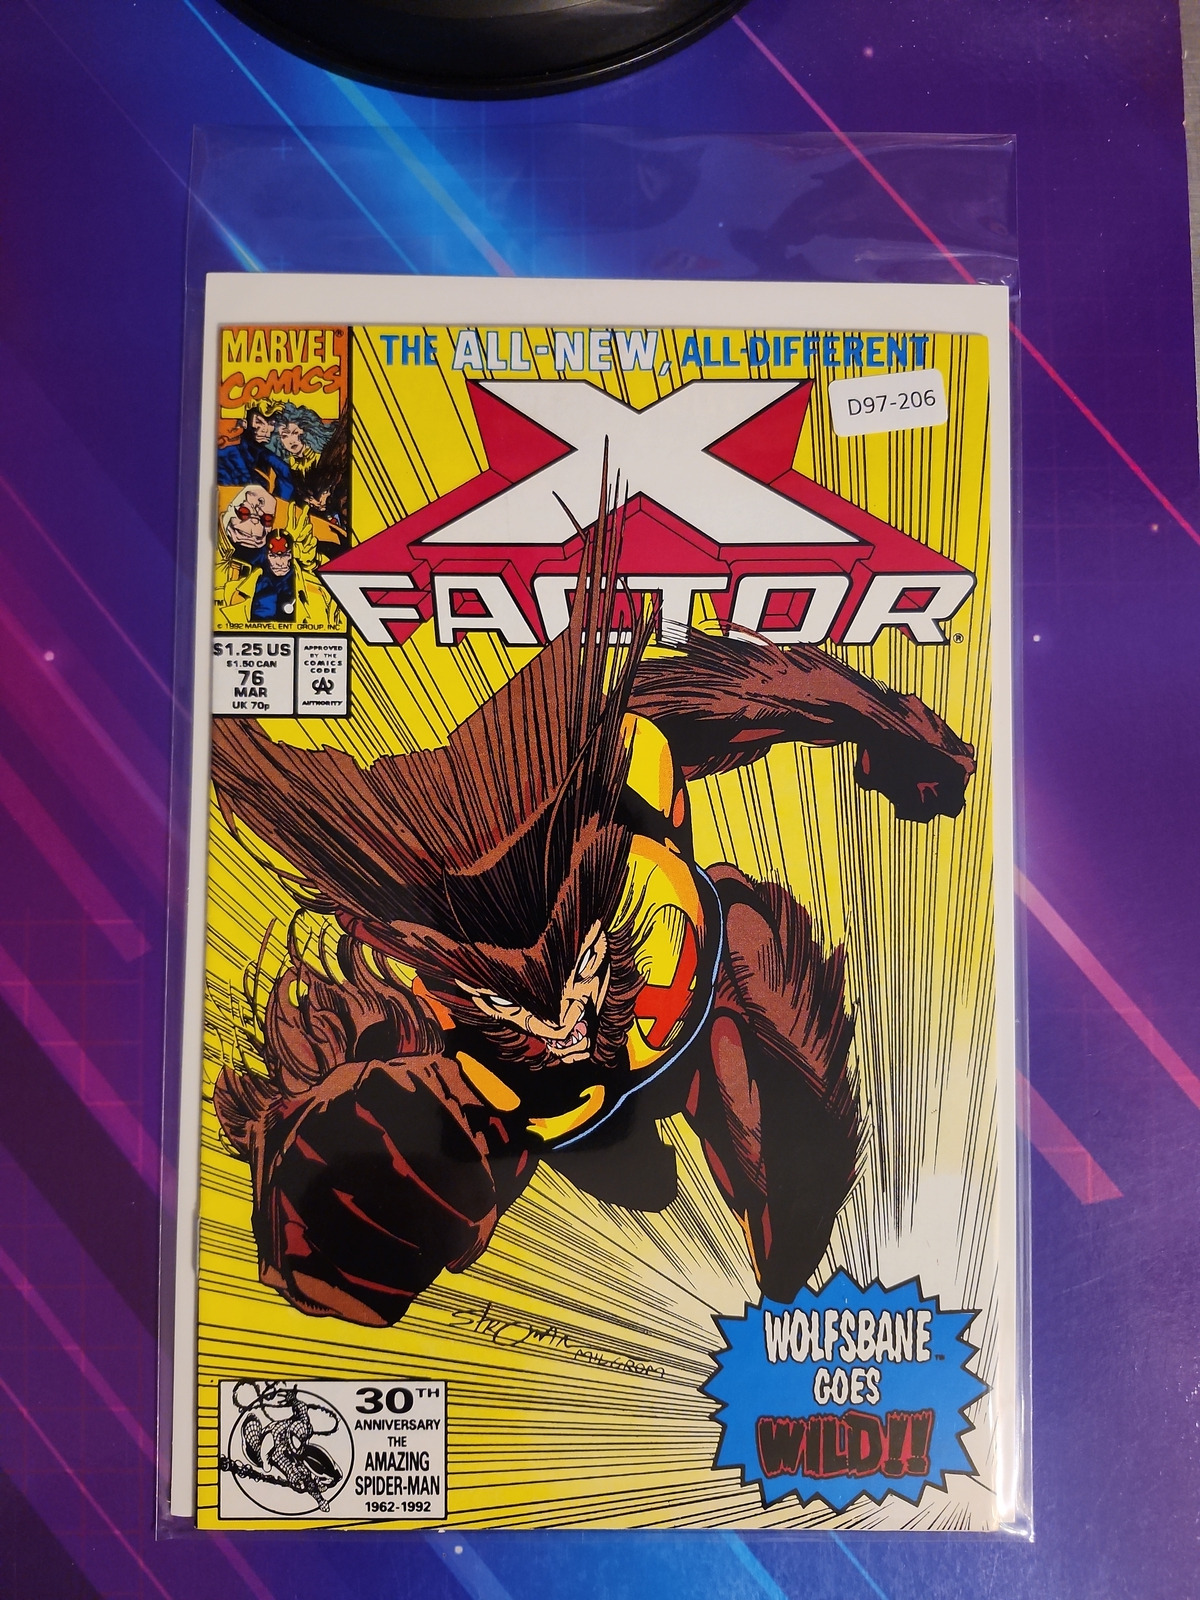 X-FACTOR #76 VOL. 1 8.0 MARVEL COMIC BOOK D97-206